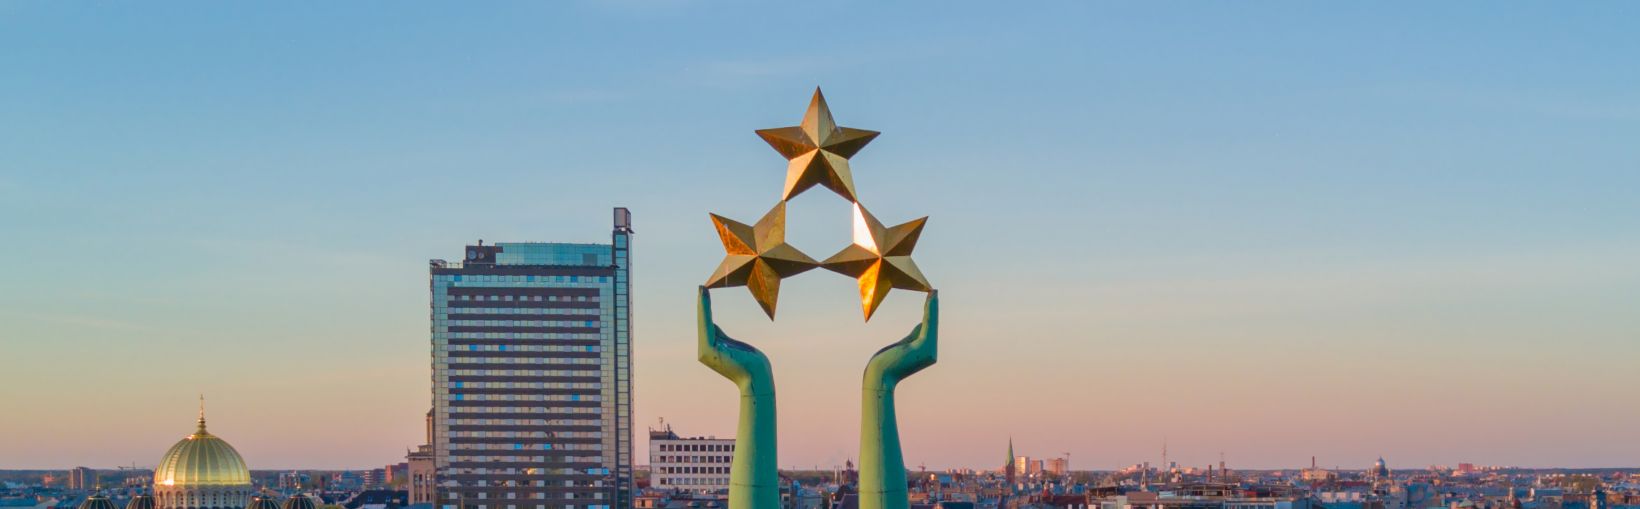 Przepiękny widok zachodu słońca w Rydze obserwowany przy Pomniku Wolności Milda. Wolność na Łotwie. Pomnik Wolności z kobiecą postacią unoszącą nad miastem trzy gwiazdy